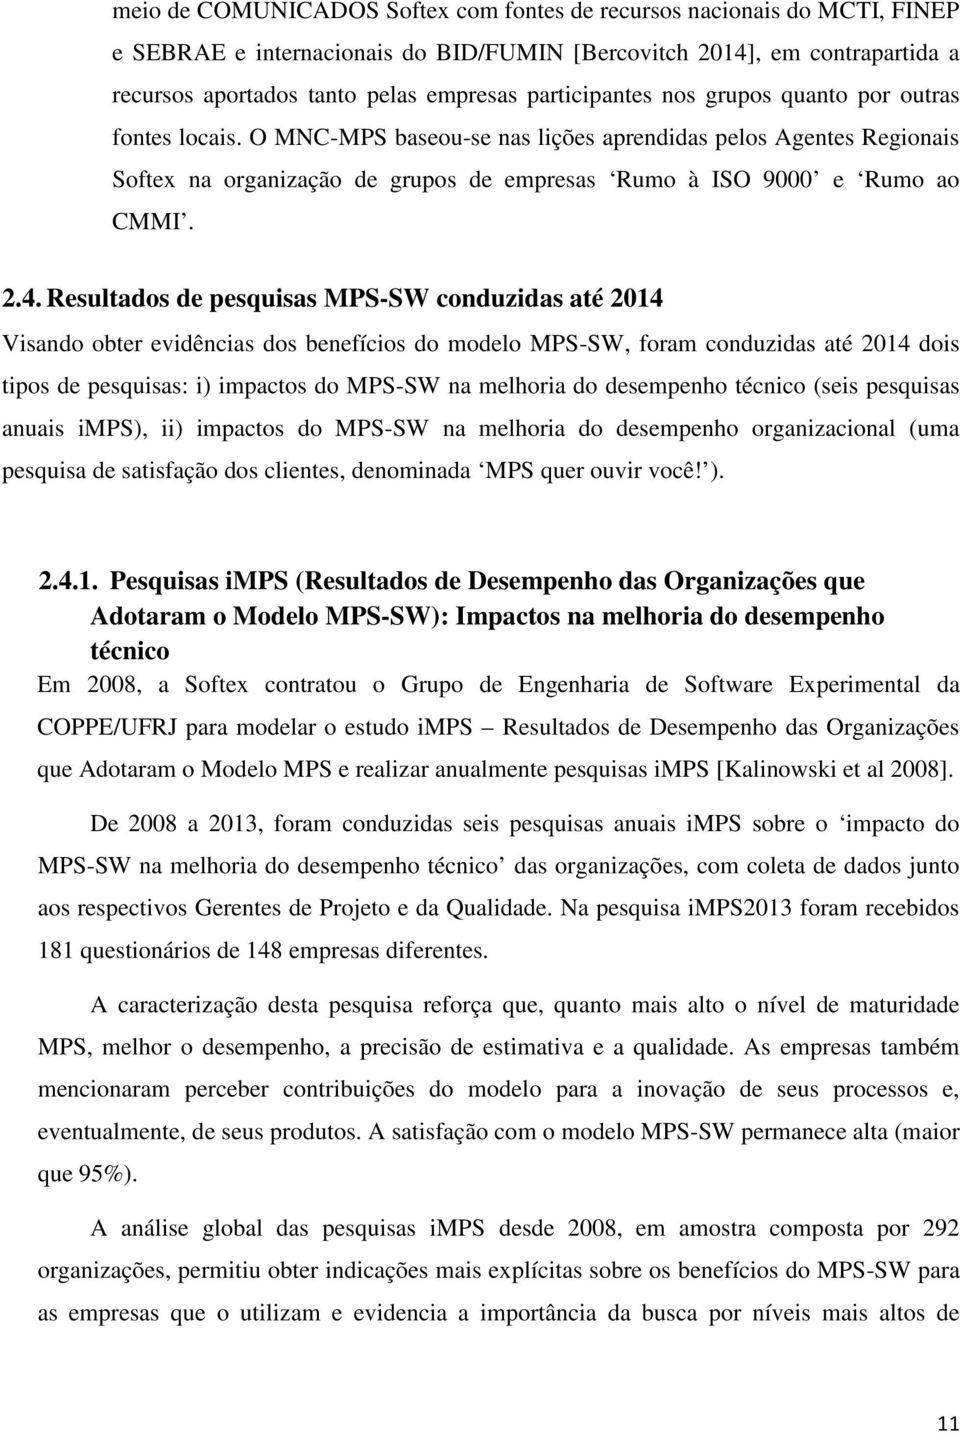 2.4. Resultados de pesquisas MPS-SW conduzidas até 2014 Visando obter evidências dos benefícios do modelo MPS-SW, foram conduzidas até 2014 dois tipos de pesquisas: i) impactos do MPS-SW na melhoria